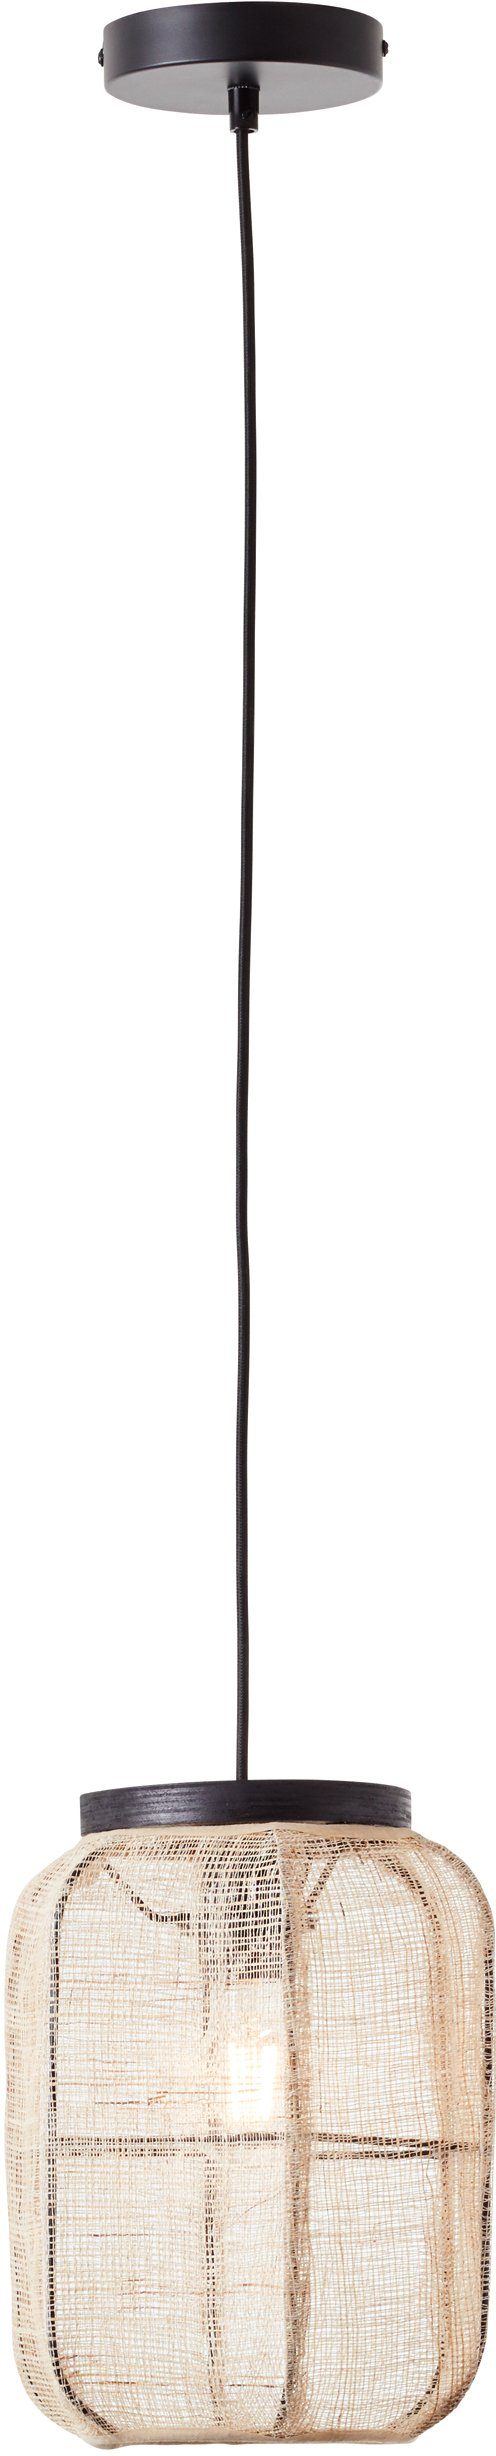 Home affaire Pendelleuchte 22cm mit Textil Hängelampe Leuchtmittel, Rouez, und Durchmesser, aus ohne Holz Schirm